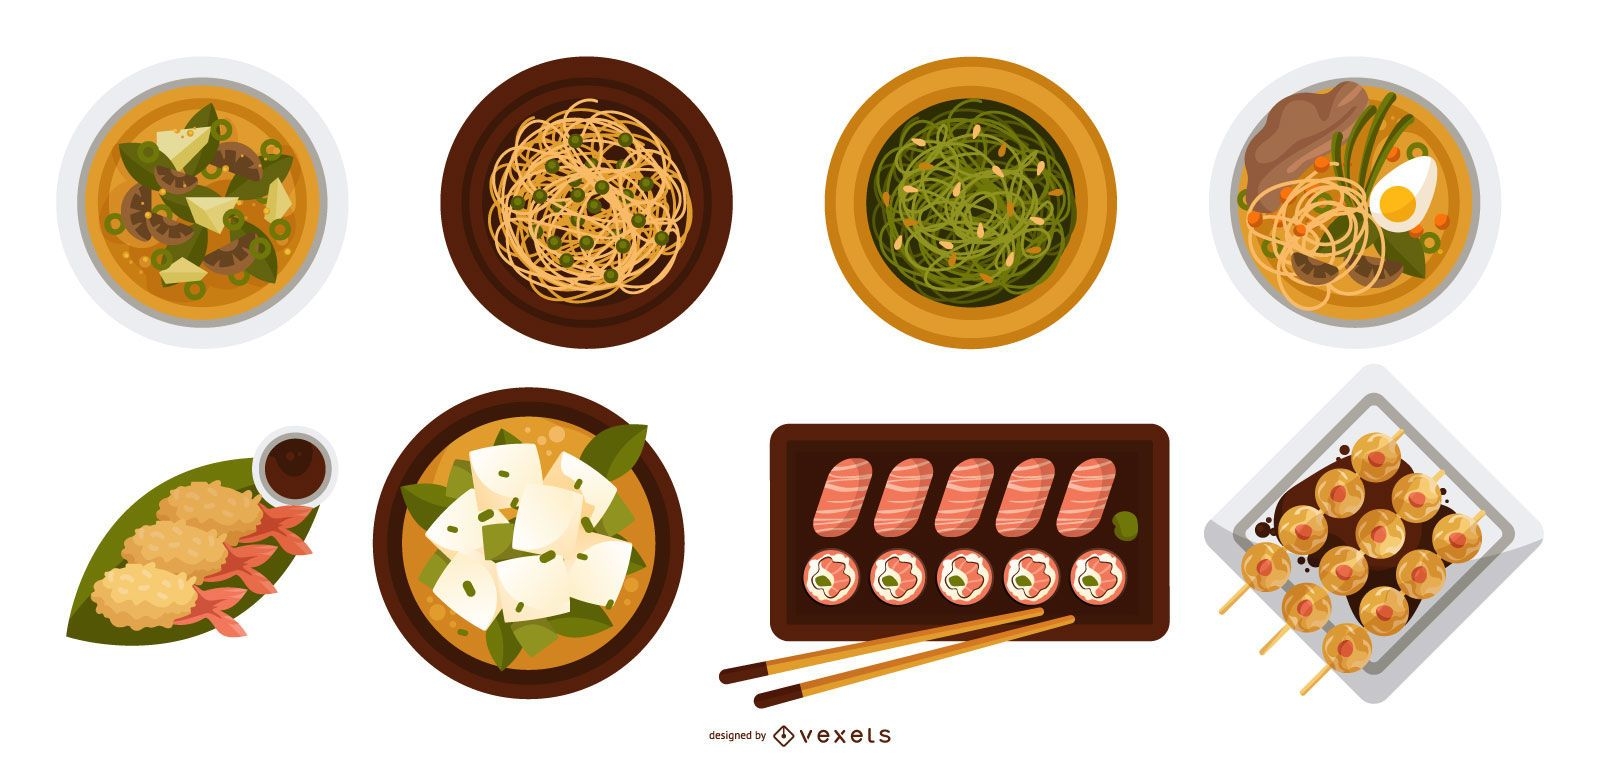 Japan Food Top View Designs